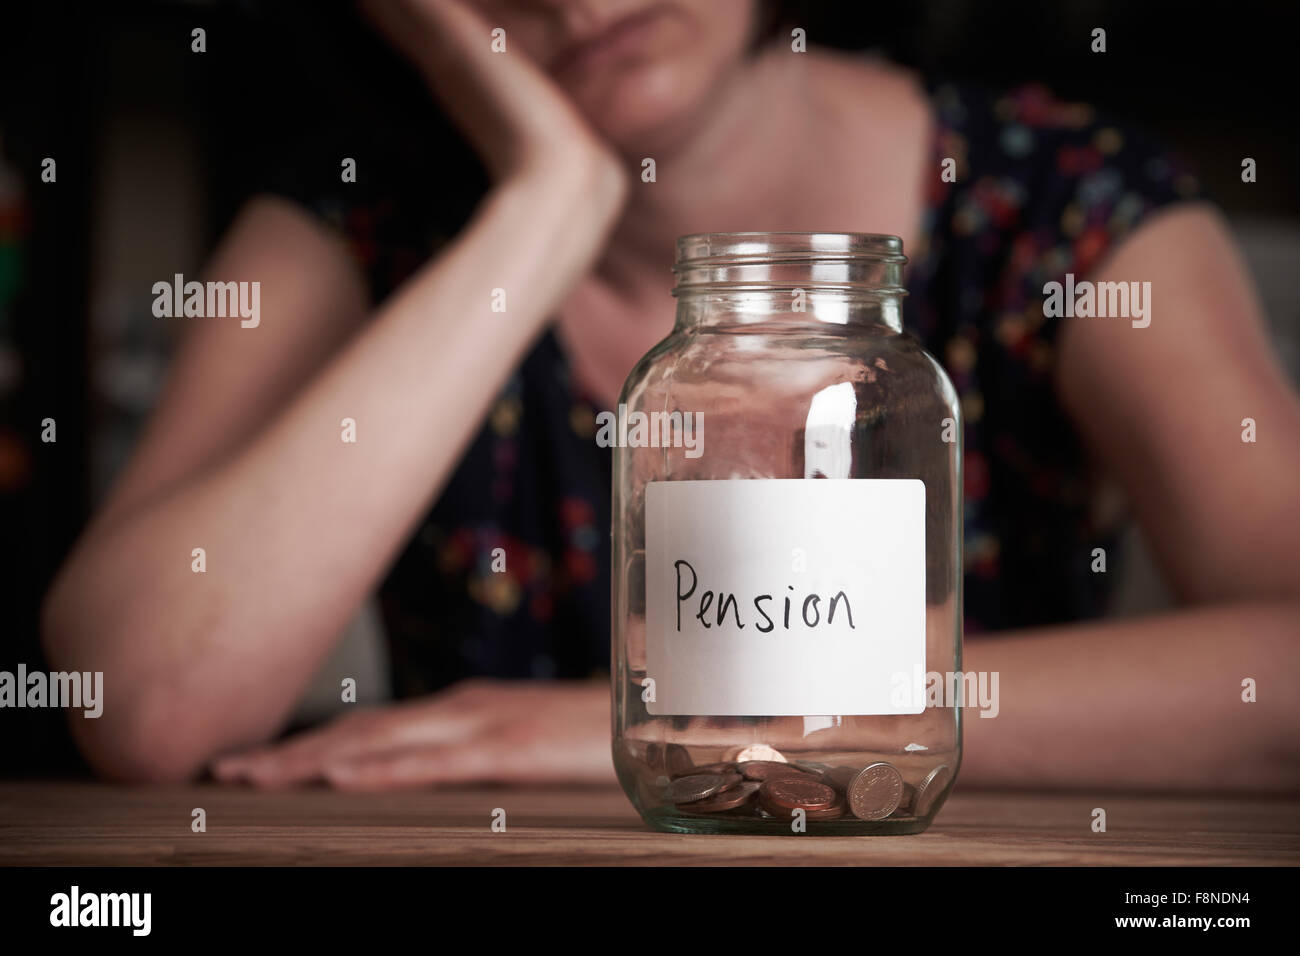 Premuto donna guardando il vaso vuoto etichettati Pension Foto Stock